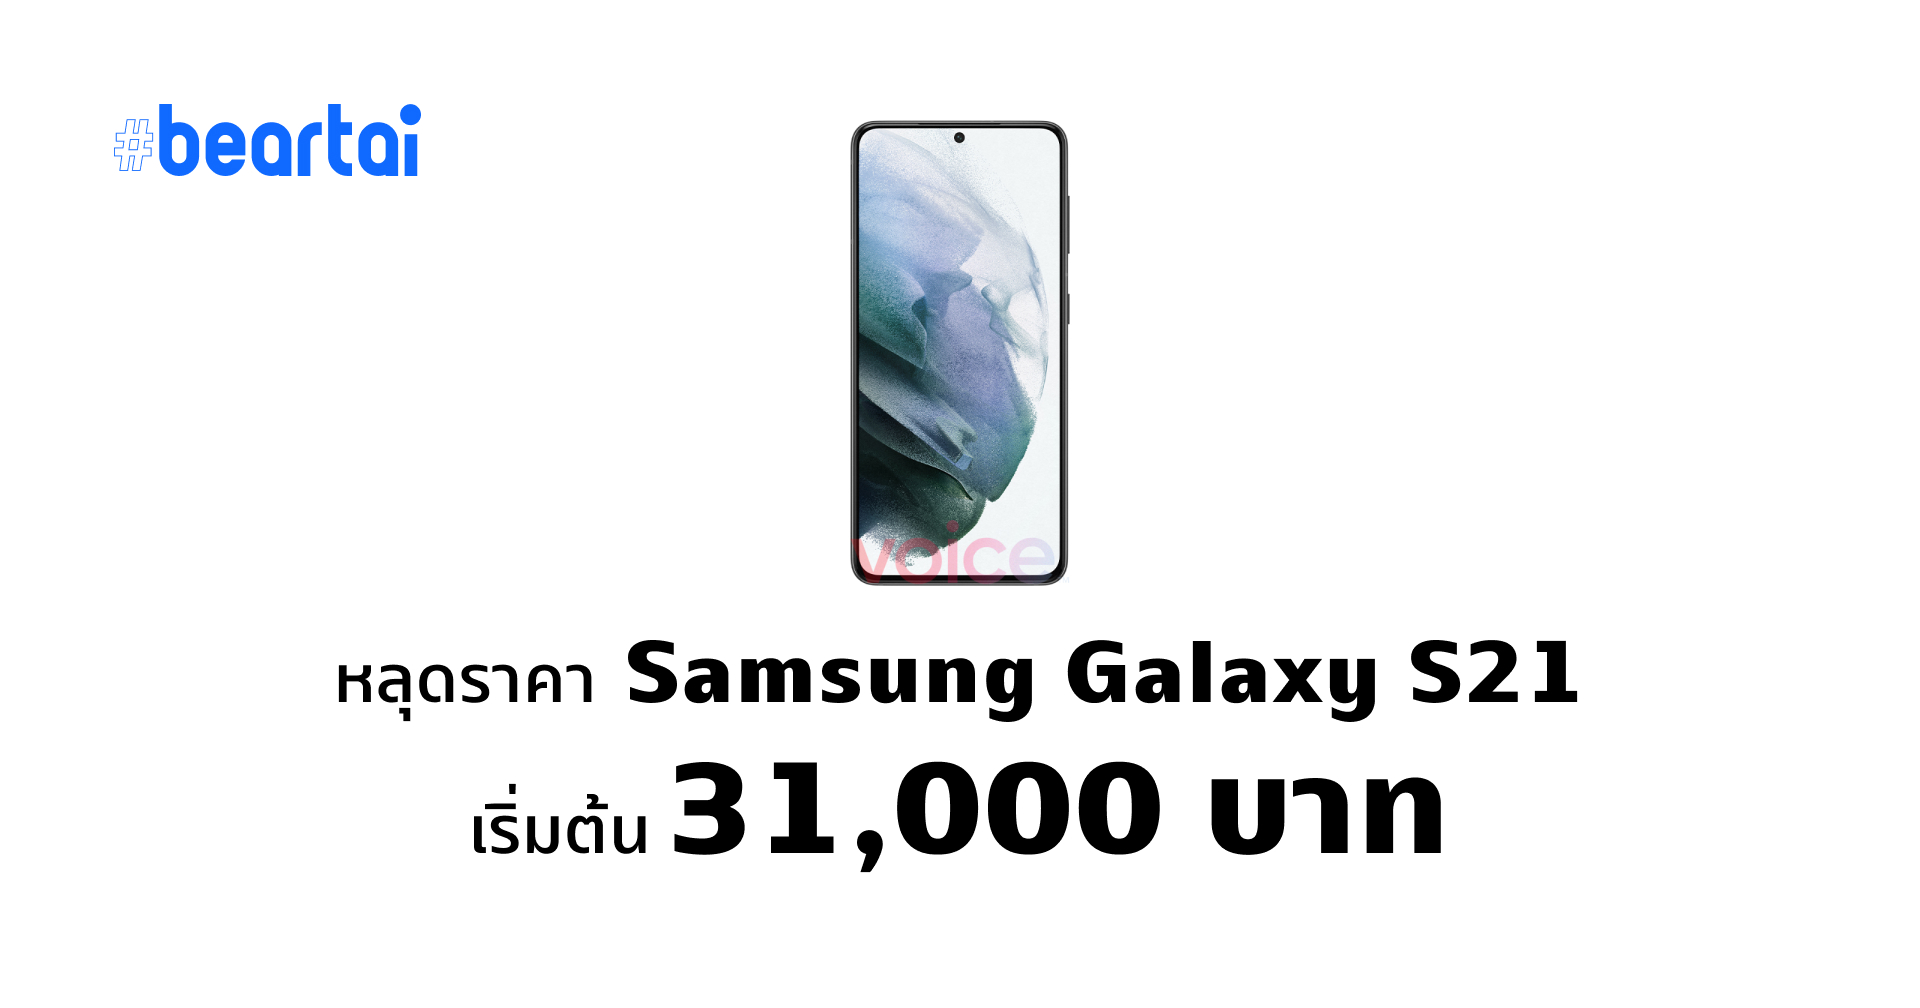 หลุดราคา Galaxy S21, S21+, และ S21 Ultra เริ่มต้นที่ 31,000 บาท